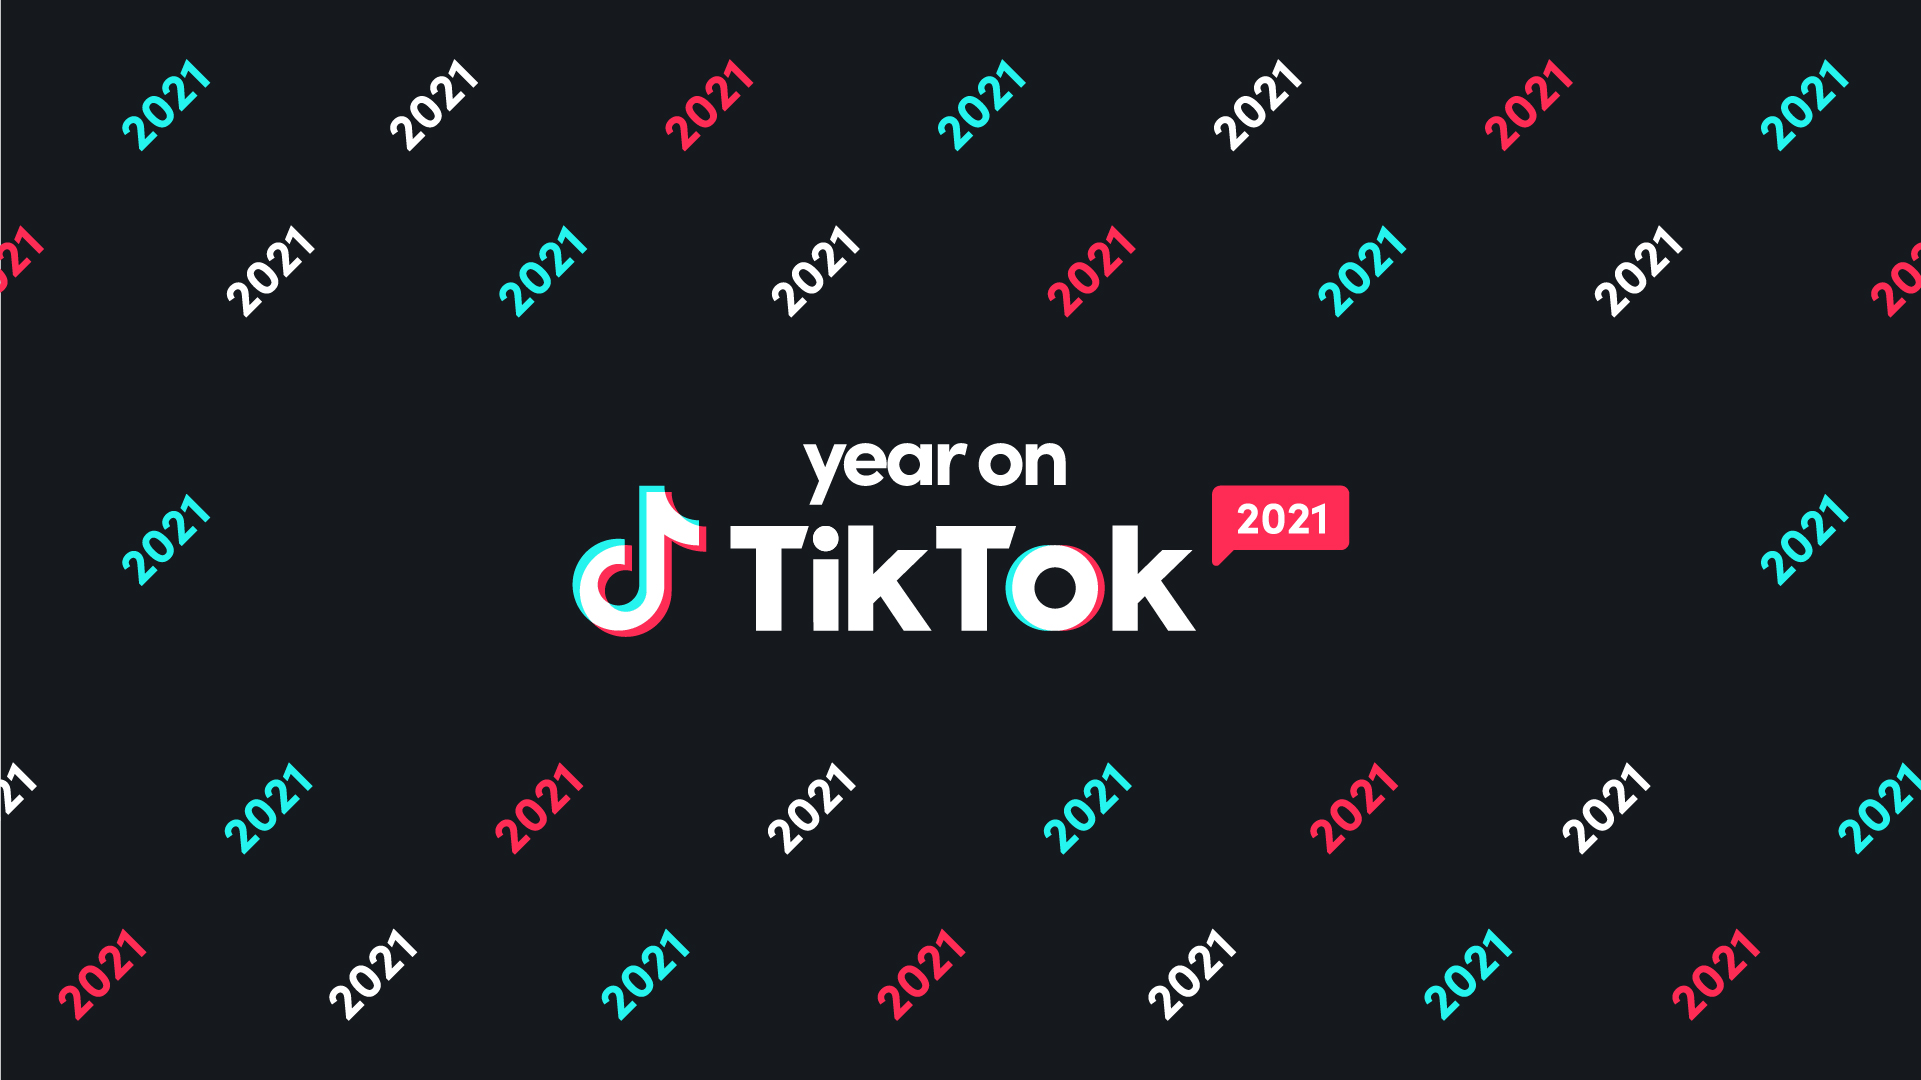 TikTok năm 2021 là một trong những ứng dụng phổ biến nhất hiện nay. Hình ảnh này sẽ mang đến cho bạn một cái nhìn tổng quan về nền tảng trực tuyến này, bao gồm các thể loại video, trang phục, nhạc nền và nhiều hơn thế. Bạn sẽ có thể tìm hiểu thêm về cách tạo ra nội dung tuyệt vời trên TikTok.